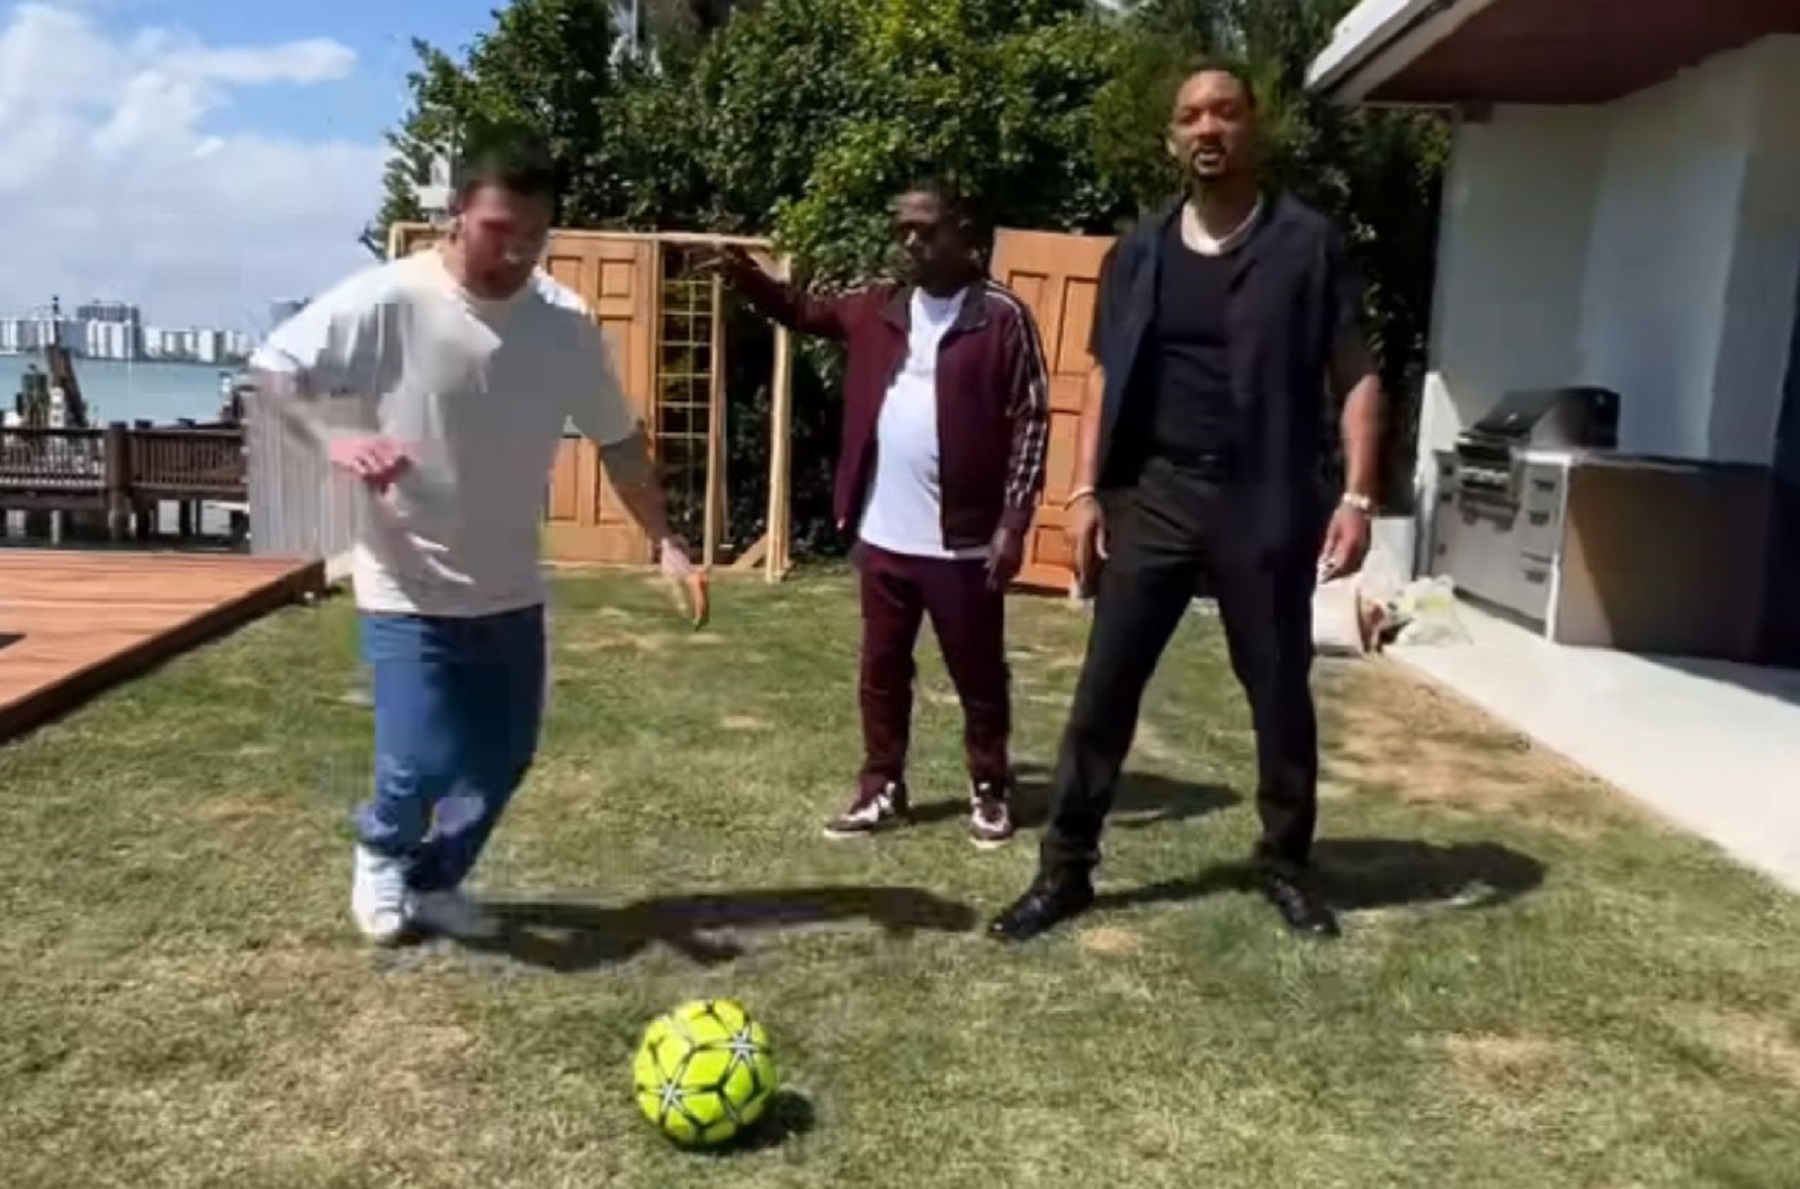 Lionel Messi publicó un video junto a Will Smith y Martin Lawrence. Foto: Captura del video.